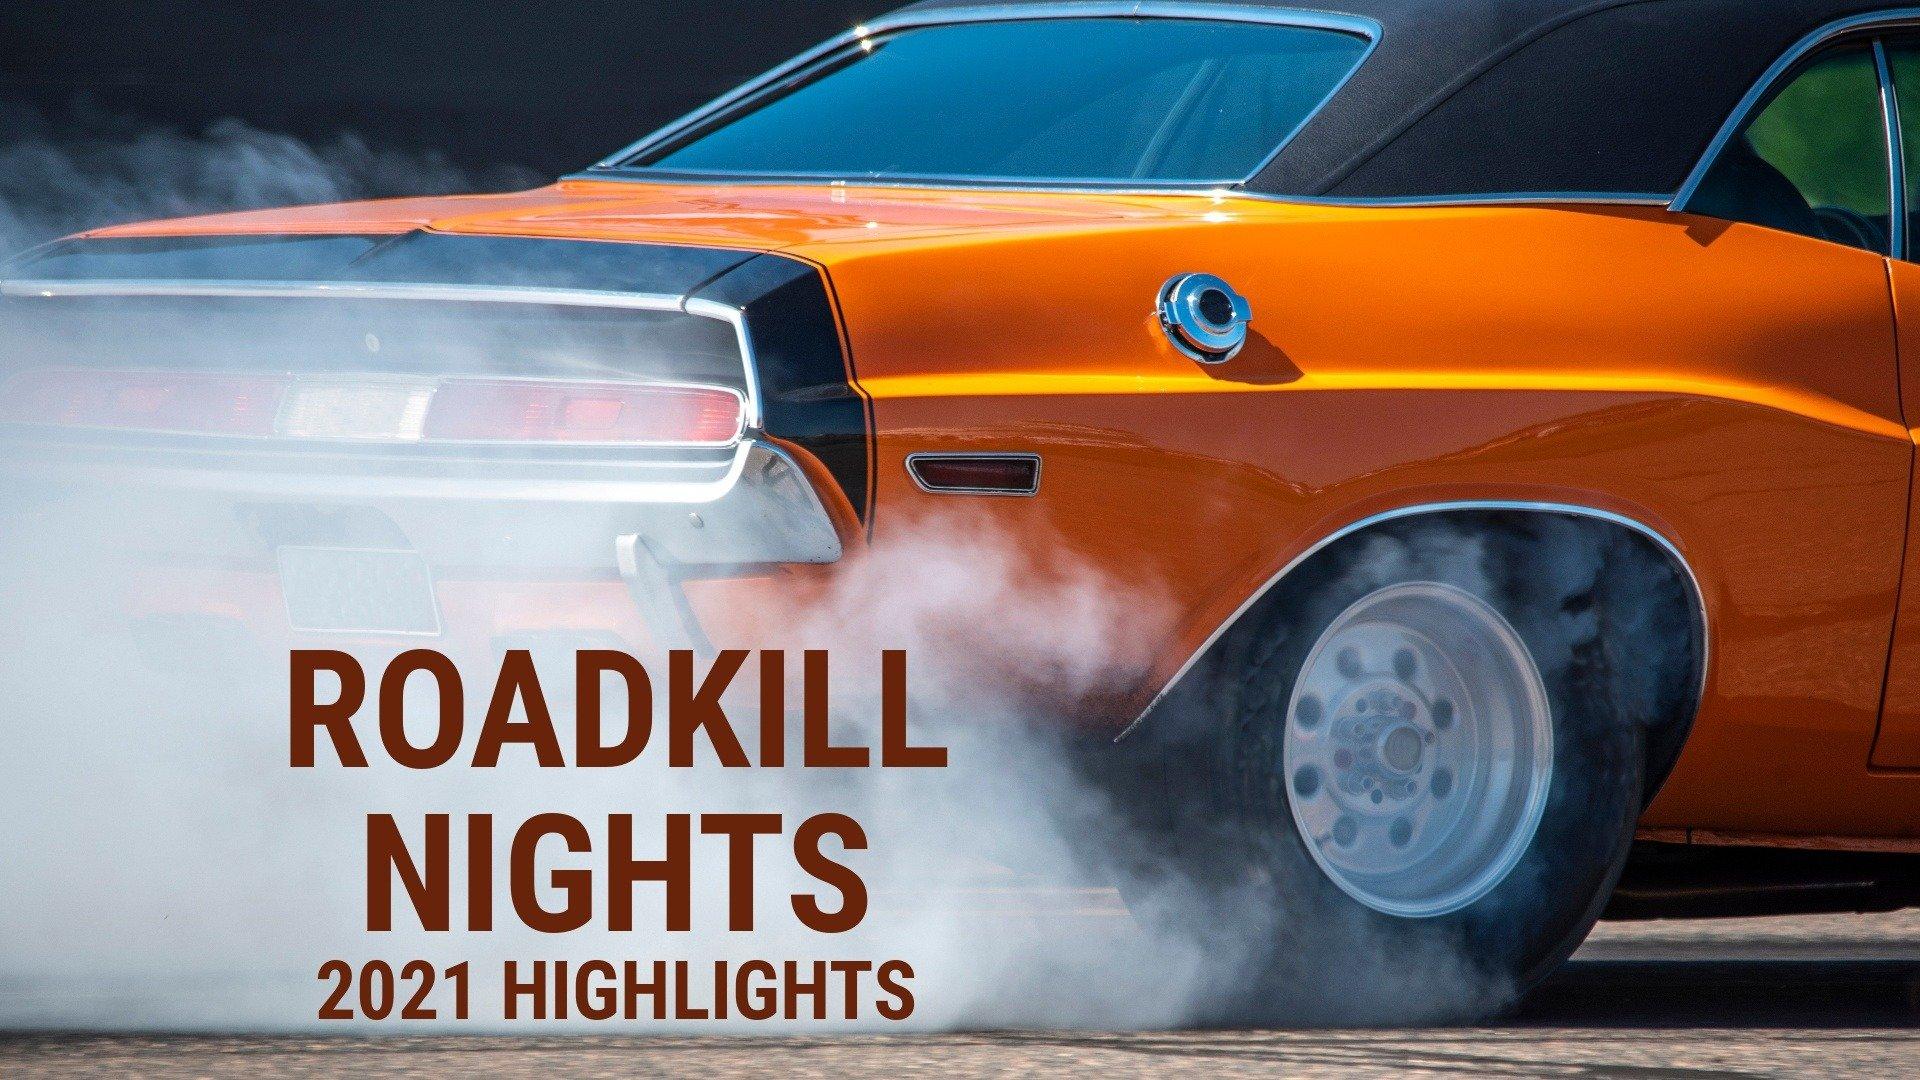 Roadkill Nights 2021 Highlights